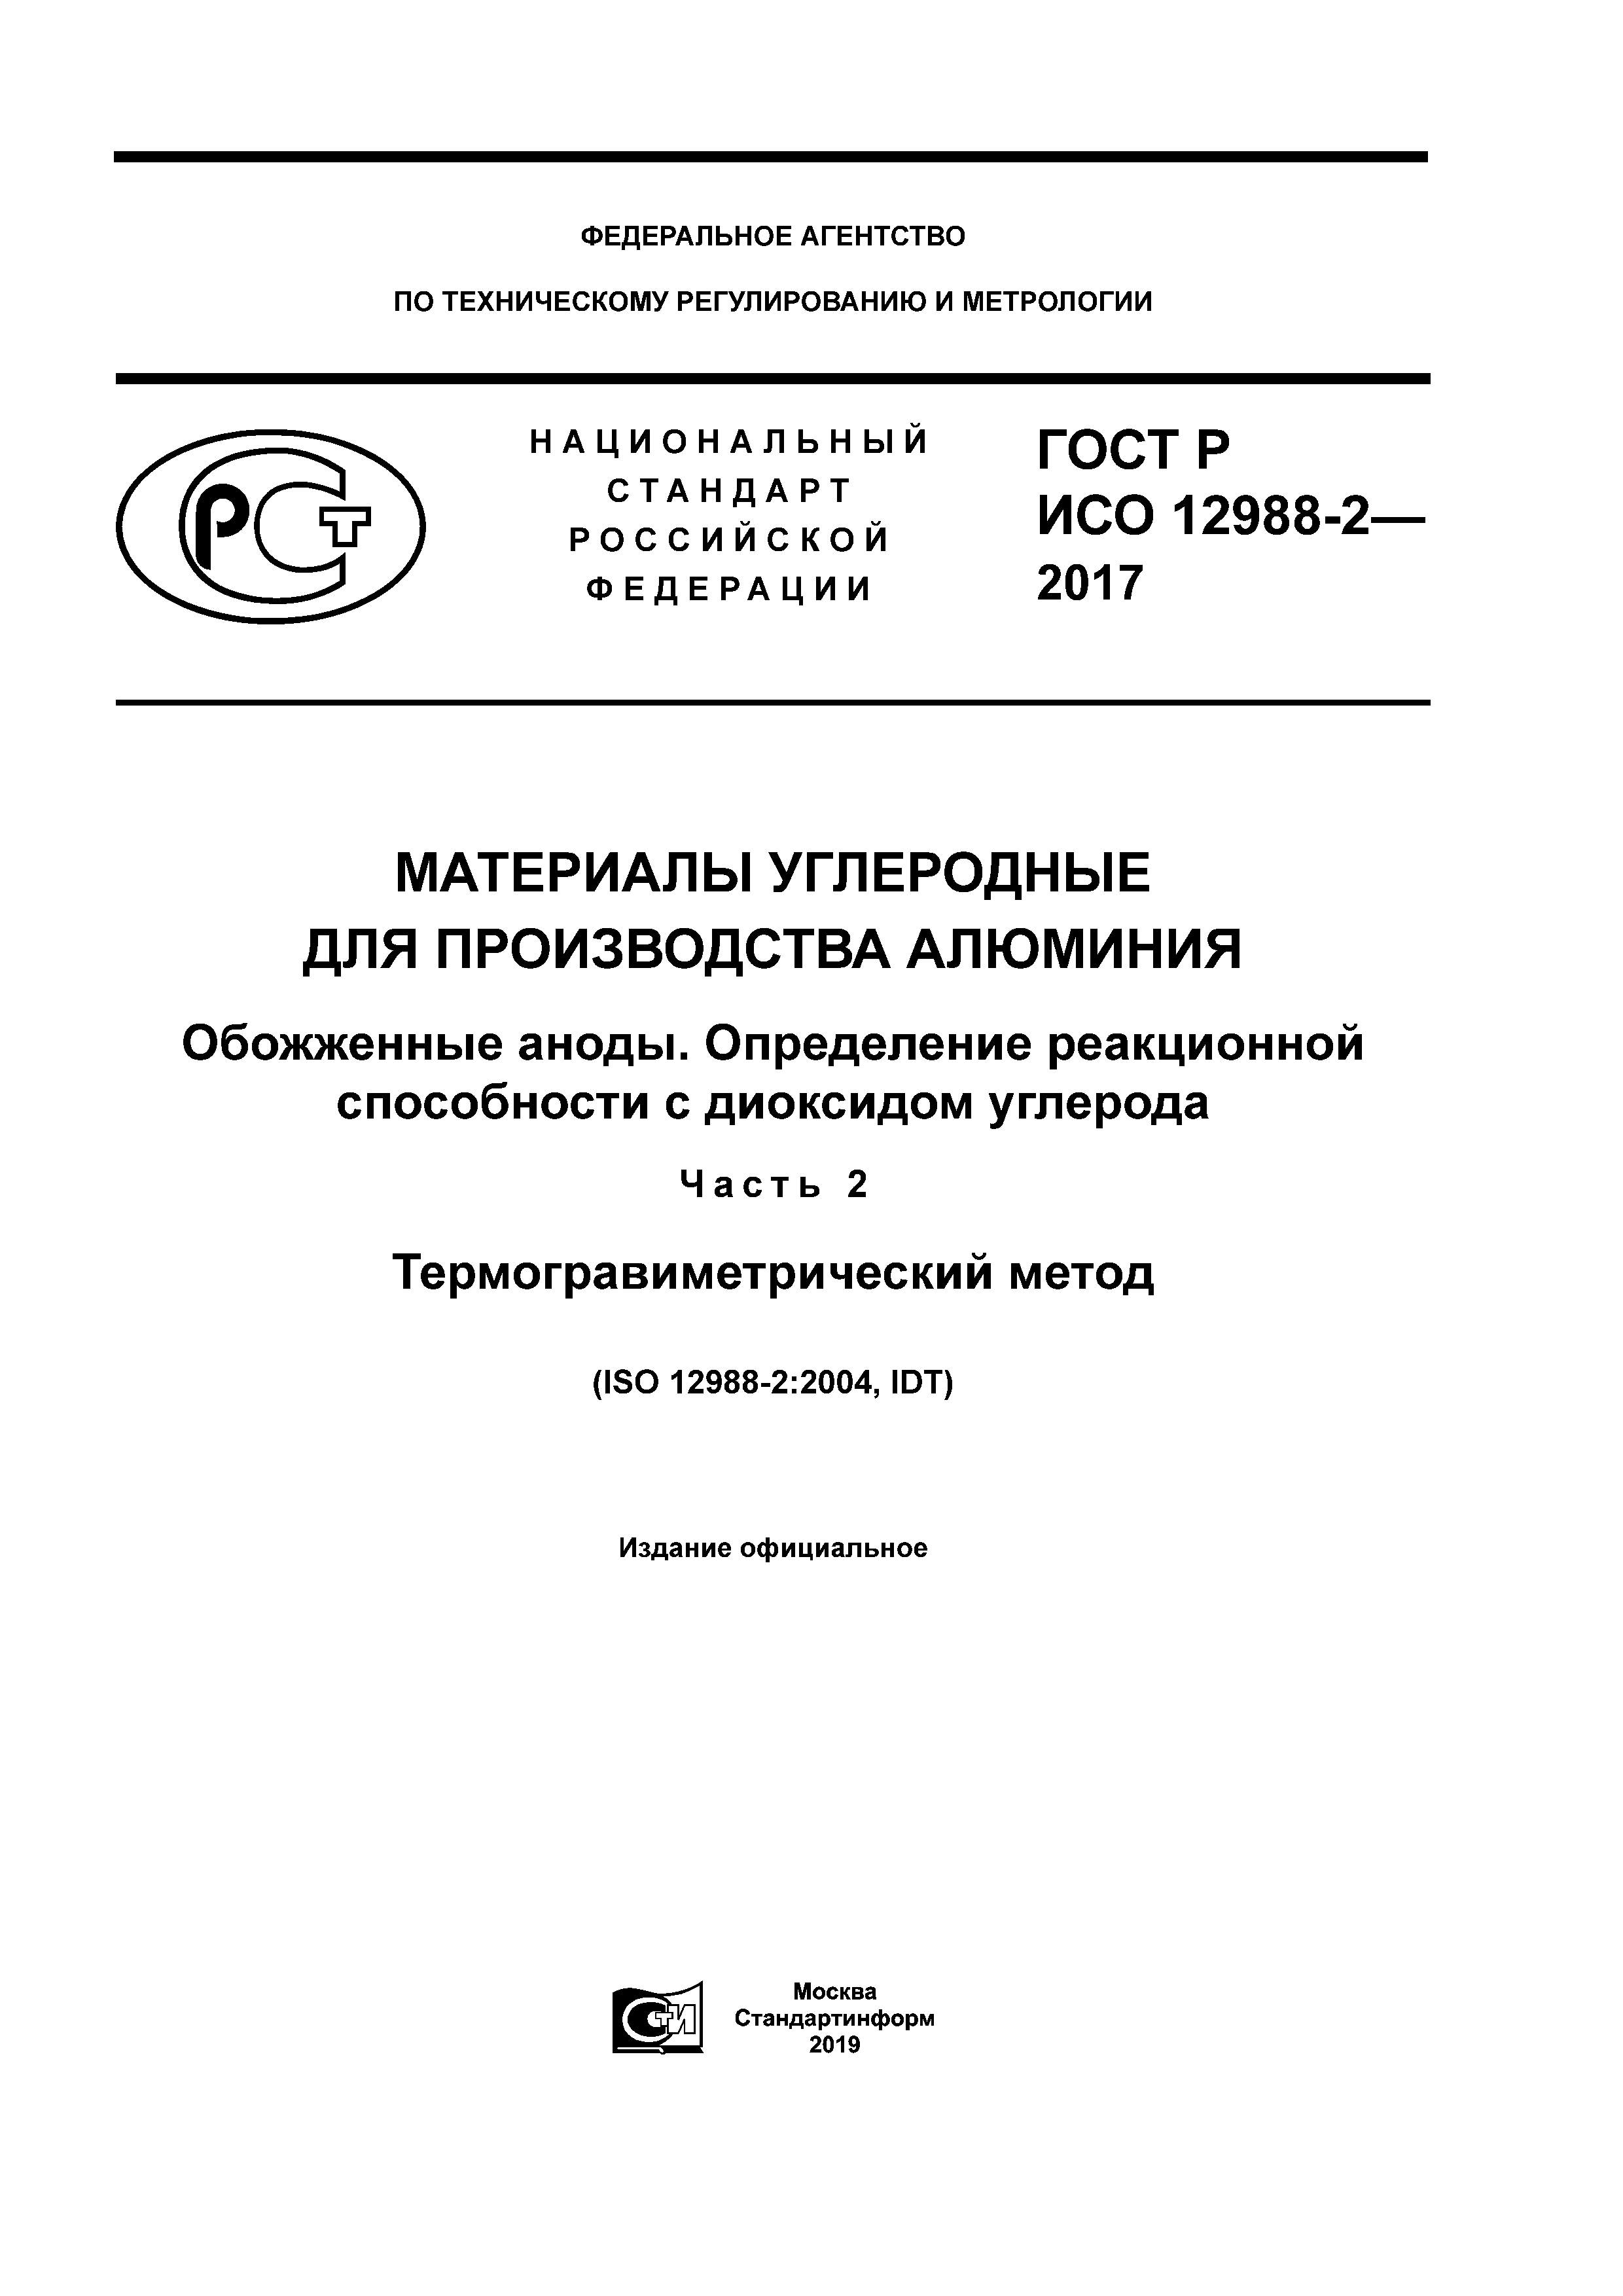 ГОСТ Р ИСО 12988-2-2017